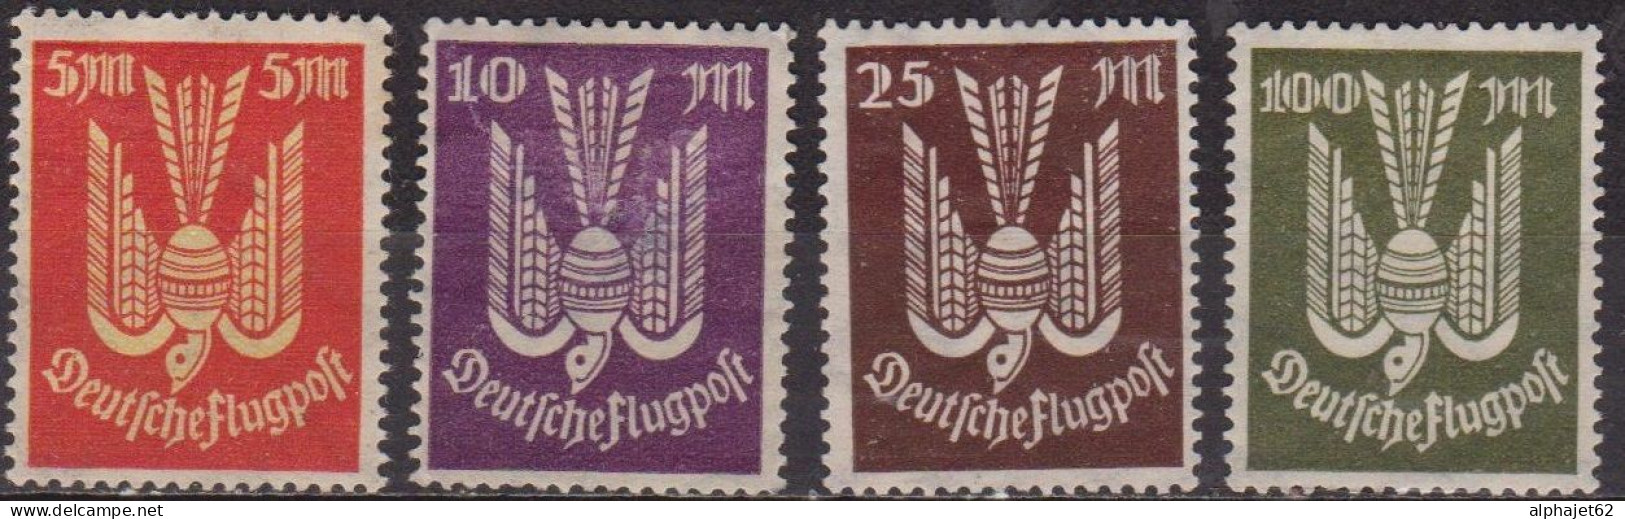 Oiseau - ALLEMAGNE - Deutsche Flugpost - Poste Aérienne - N° 15-16-17-18 * - 1922 - Posta Aerea & Zeppelin